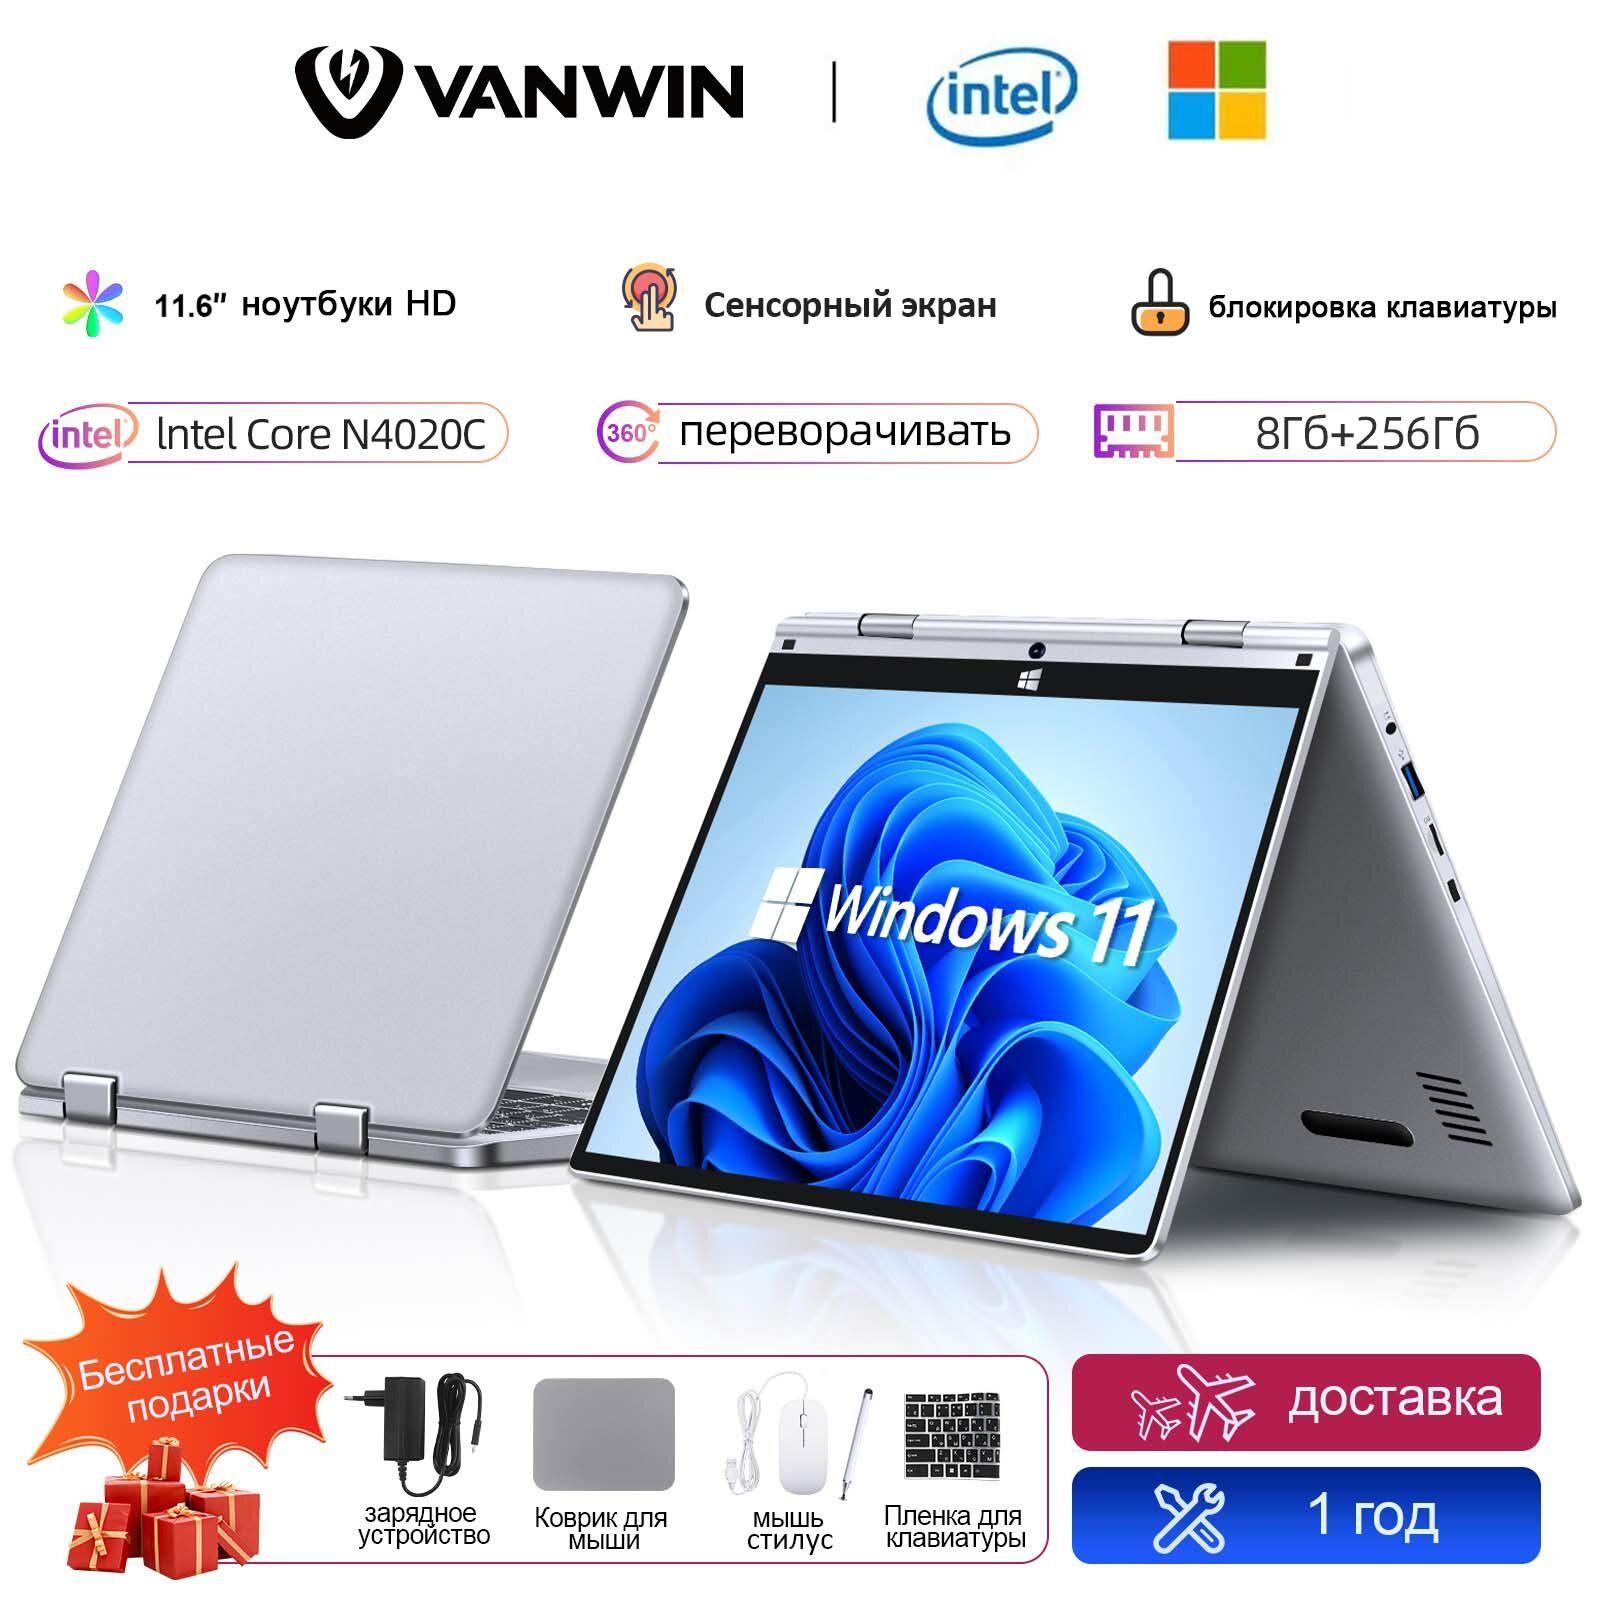 VANWIN 11.6" сенсорный экран ноутбук, процессор Intel, 8GB RAM, 256GB SSD, Windows Pro, серебристый, ноутбук для работы и учебы